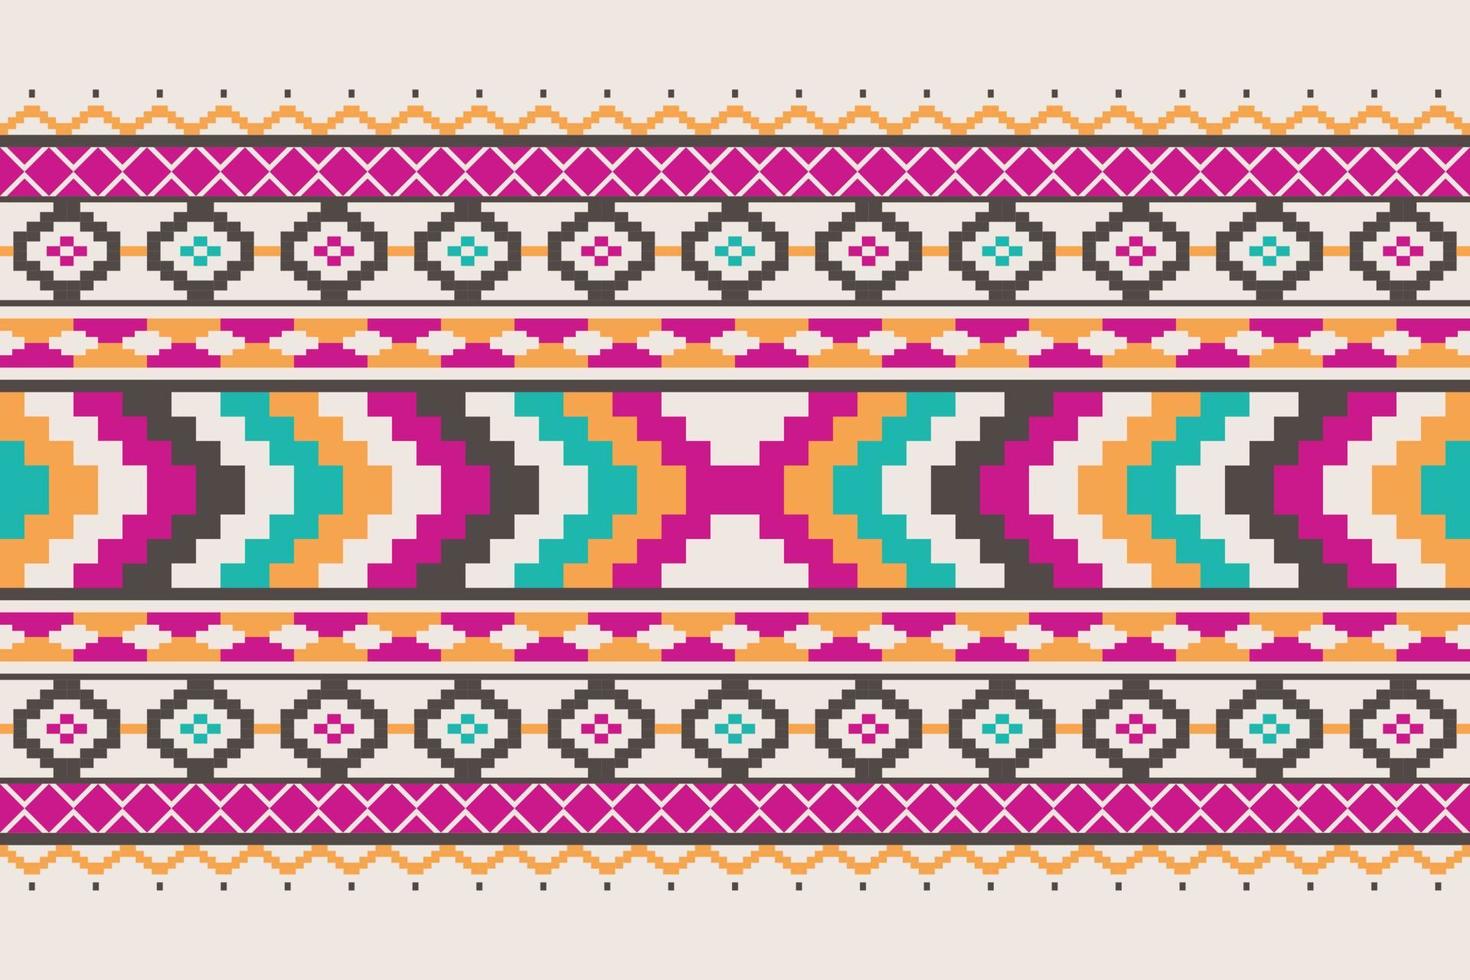 geometrico etnico modello senza soluzione di continuità. stile etnico americano azteco senza soluzione di continuità colorato tessile. design per sfondo,carta da parati,tessuto,tappeto,ornamenti,decorazione,abbigliamento,batik,avvolgimento,vettore illustrazione vettore